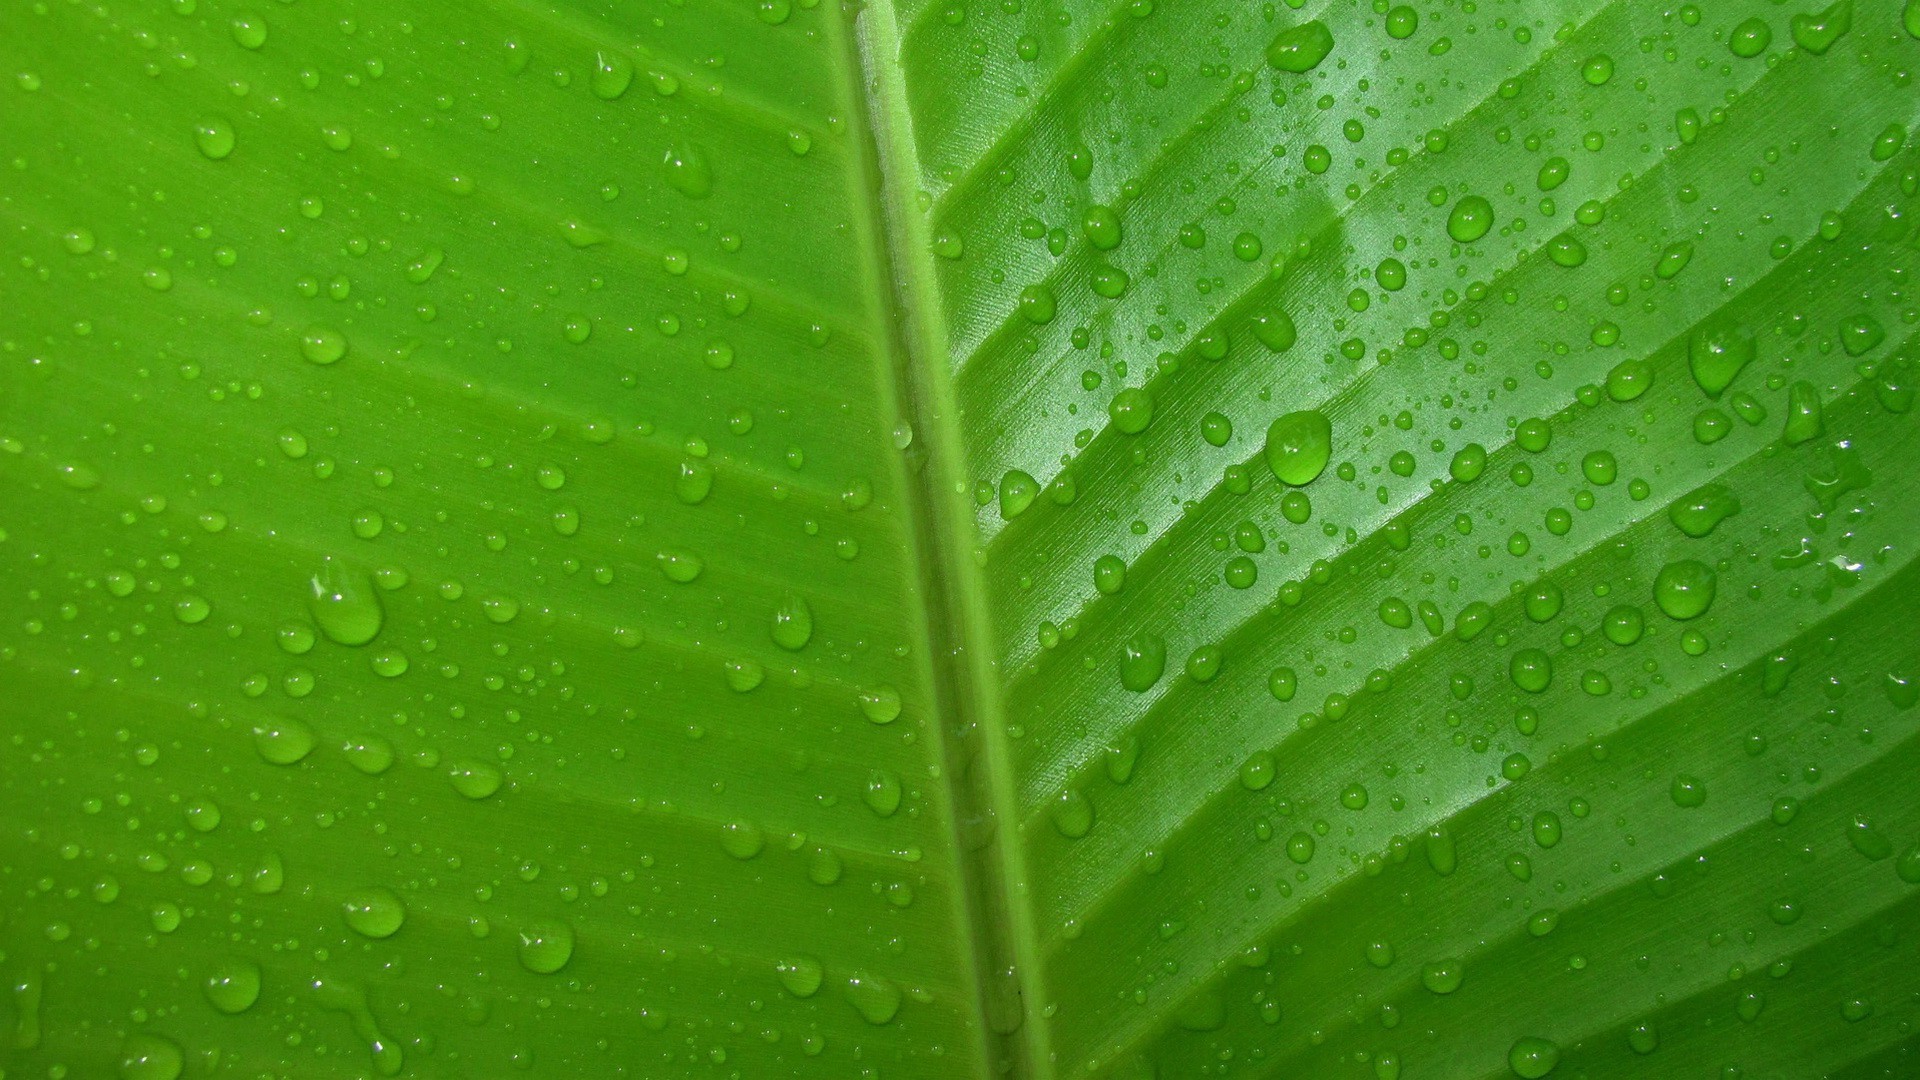 1920x1080 Dew drops on green leaf HD Wallpaper 